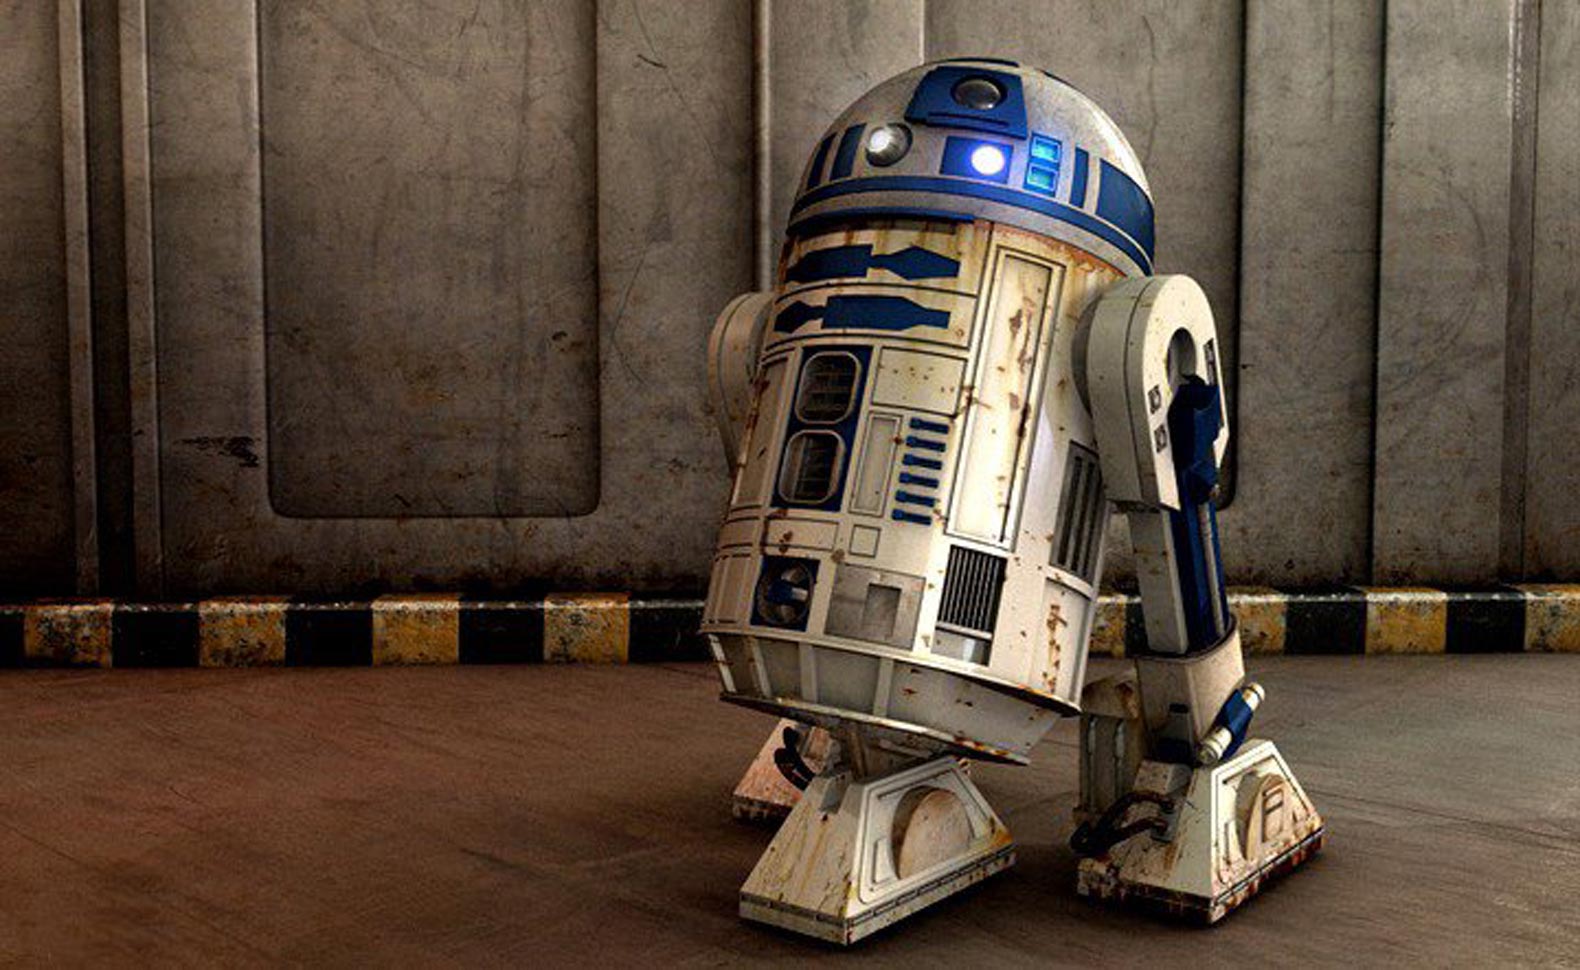 O Nome R2 D2 Significa Reel Dialog